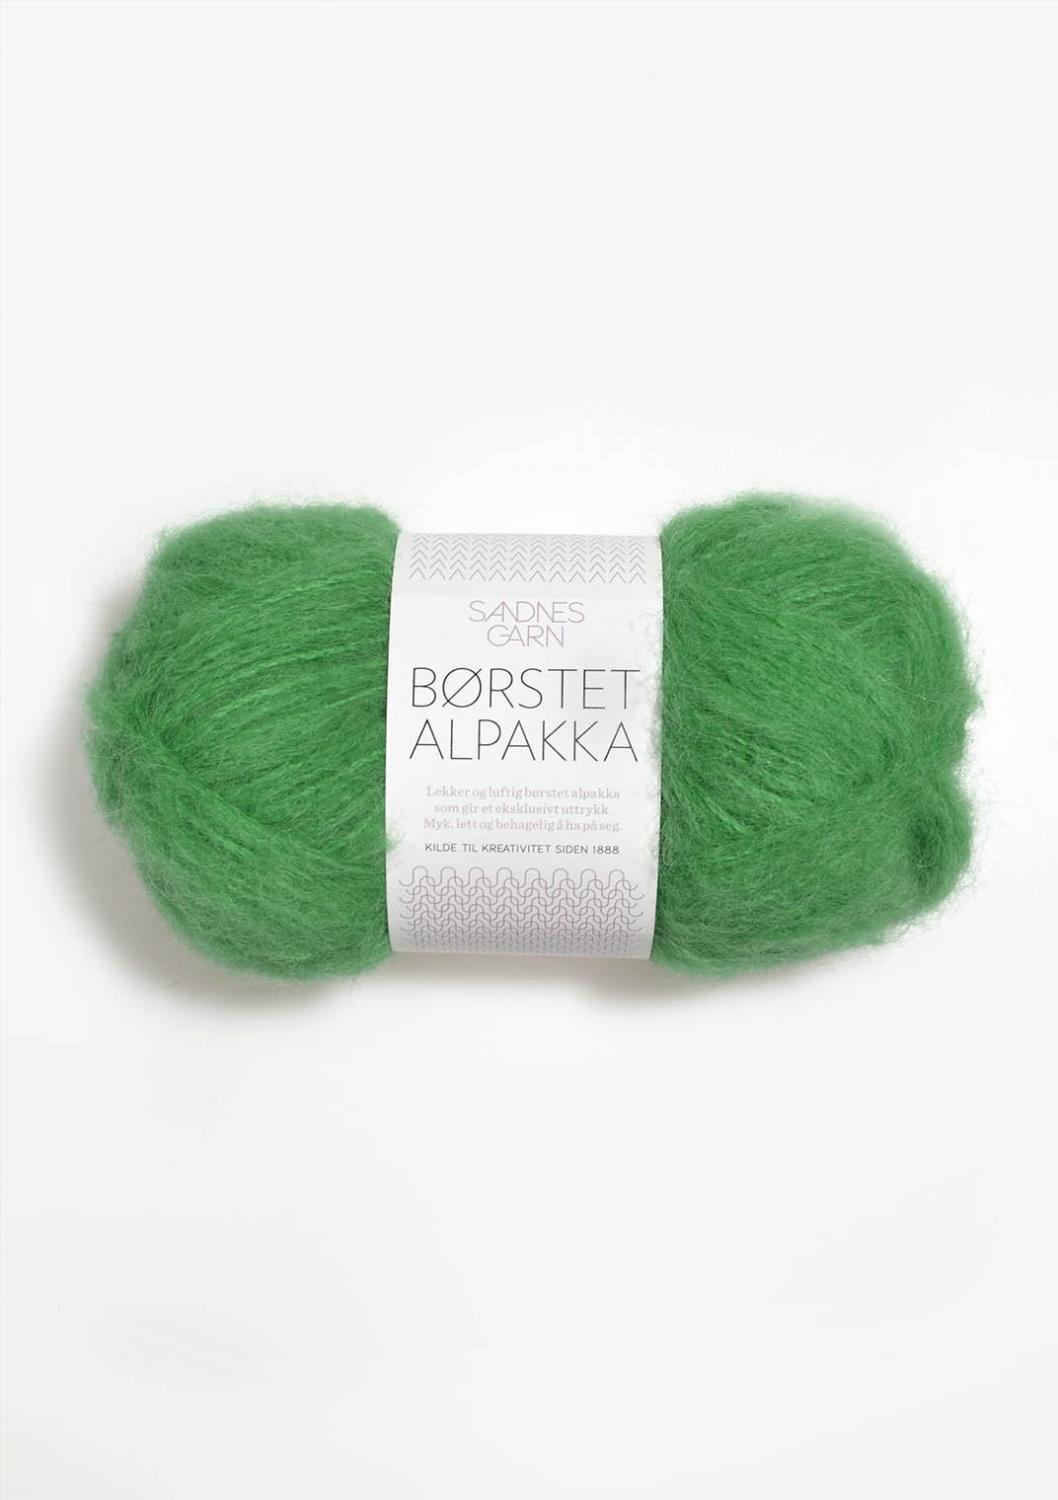 Børstet Alpakka Sandnes 8026 - Vårgrønn